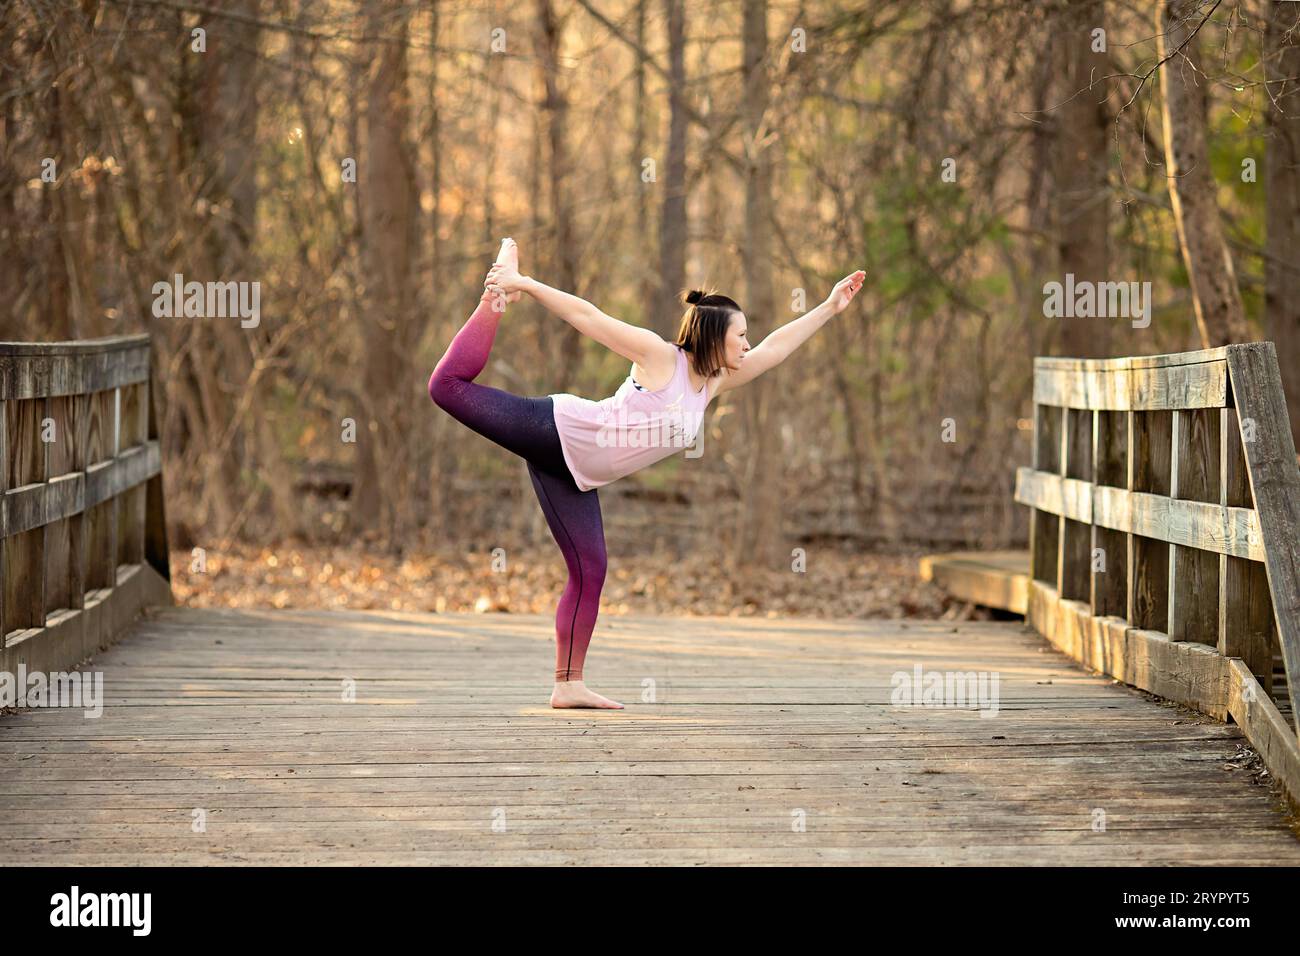 Mujer practicando yoga en un puente descalzo Foto de stock